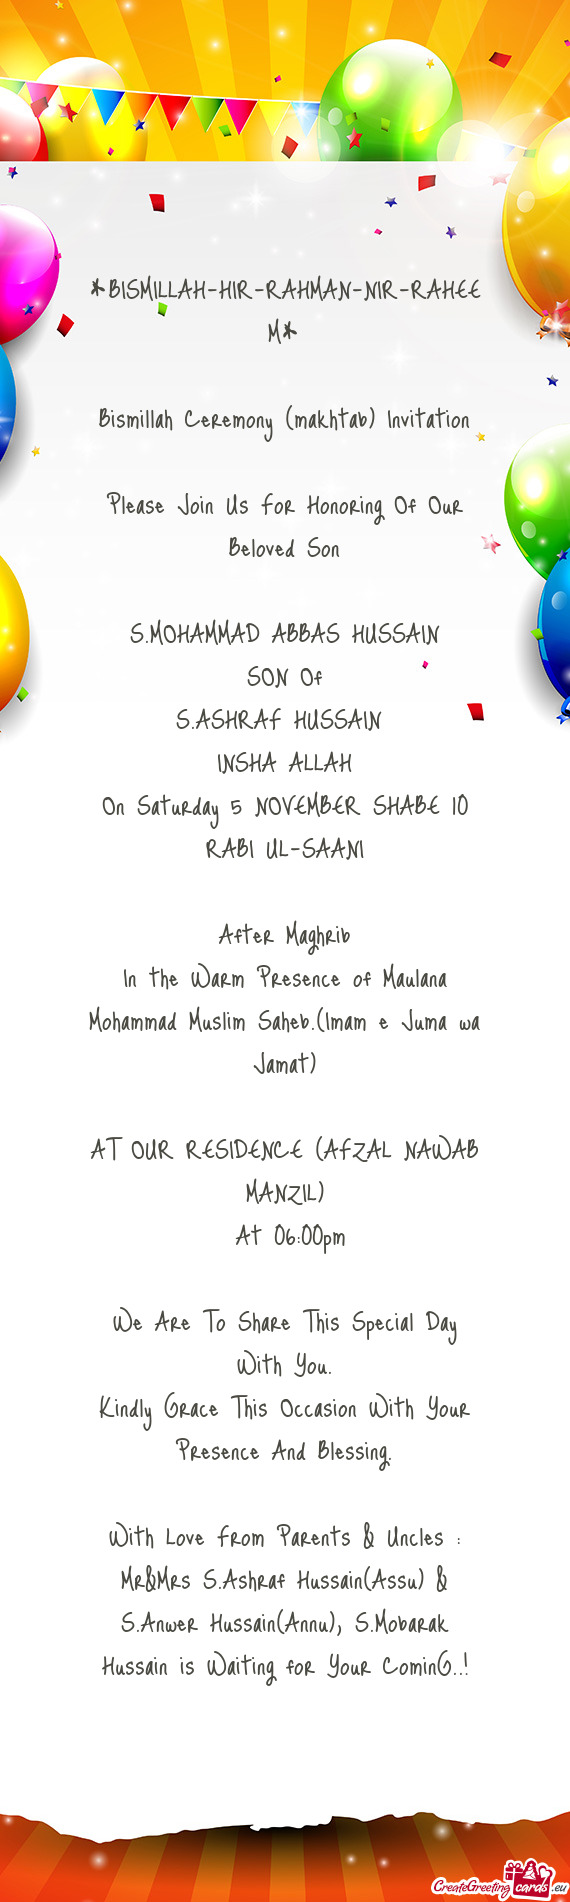 Bismillah Ceremony (makhtab) Invitation